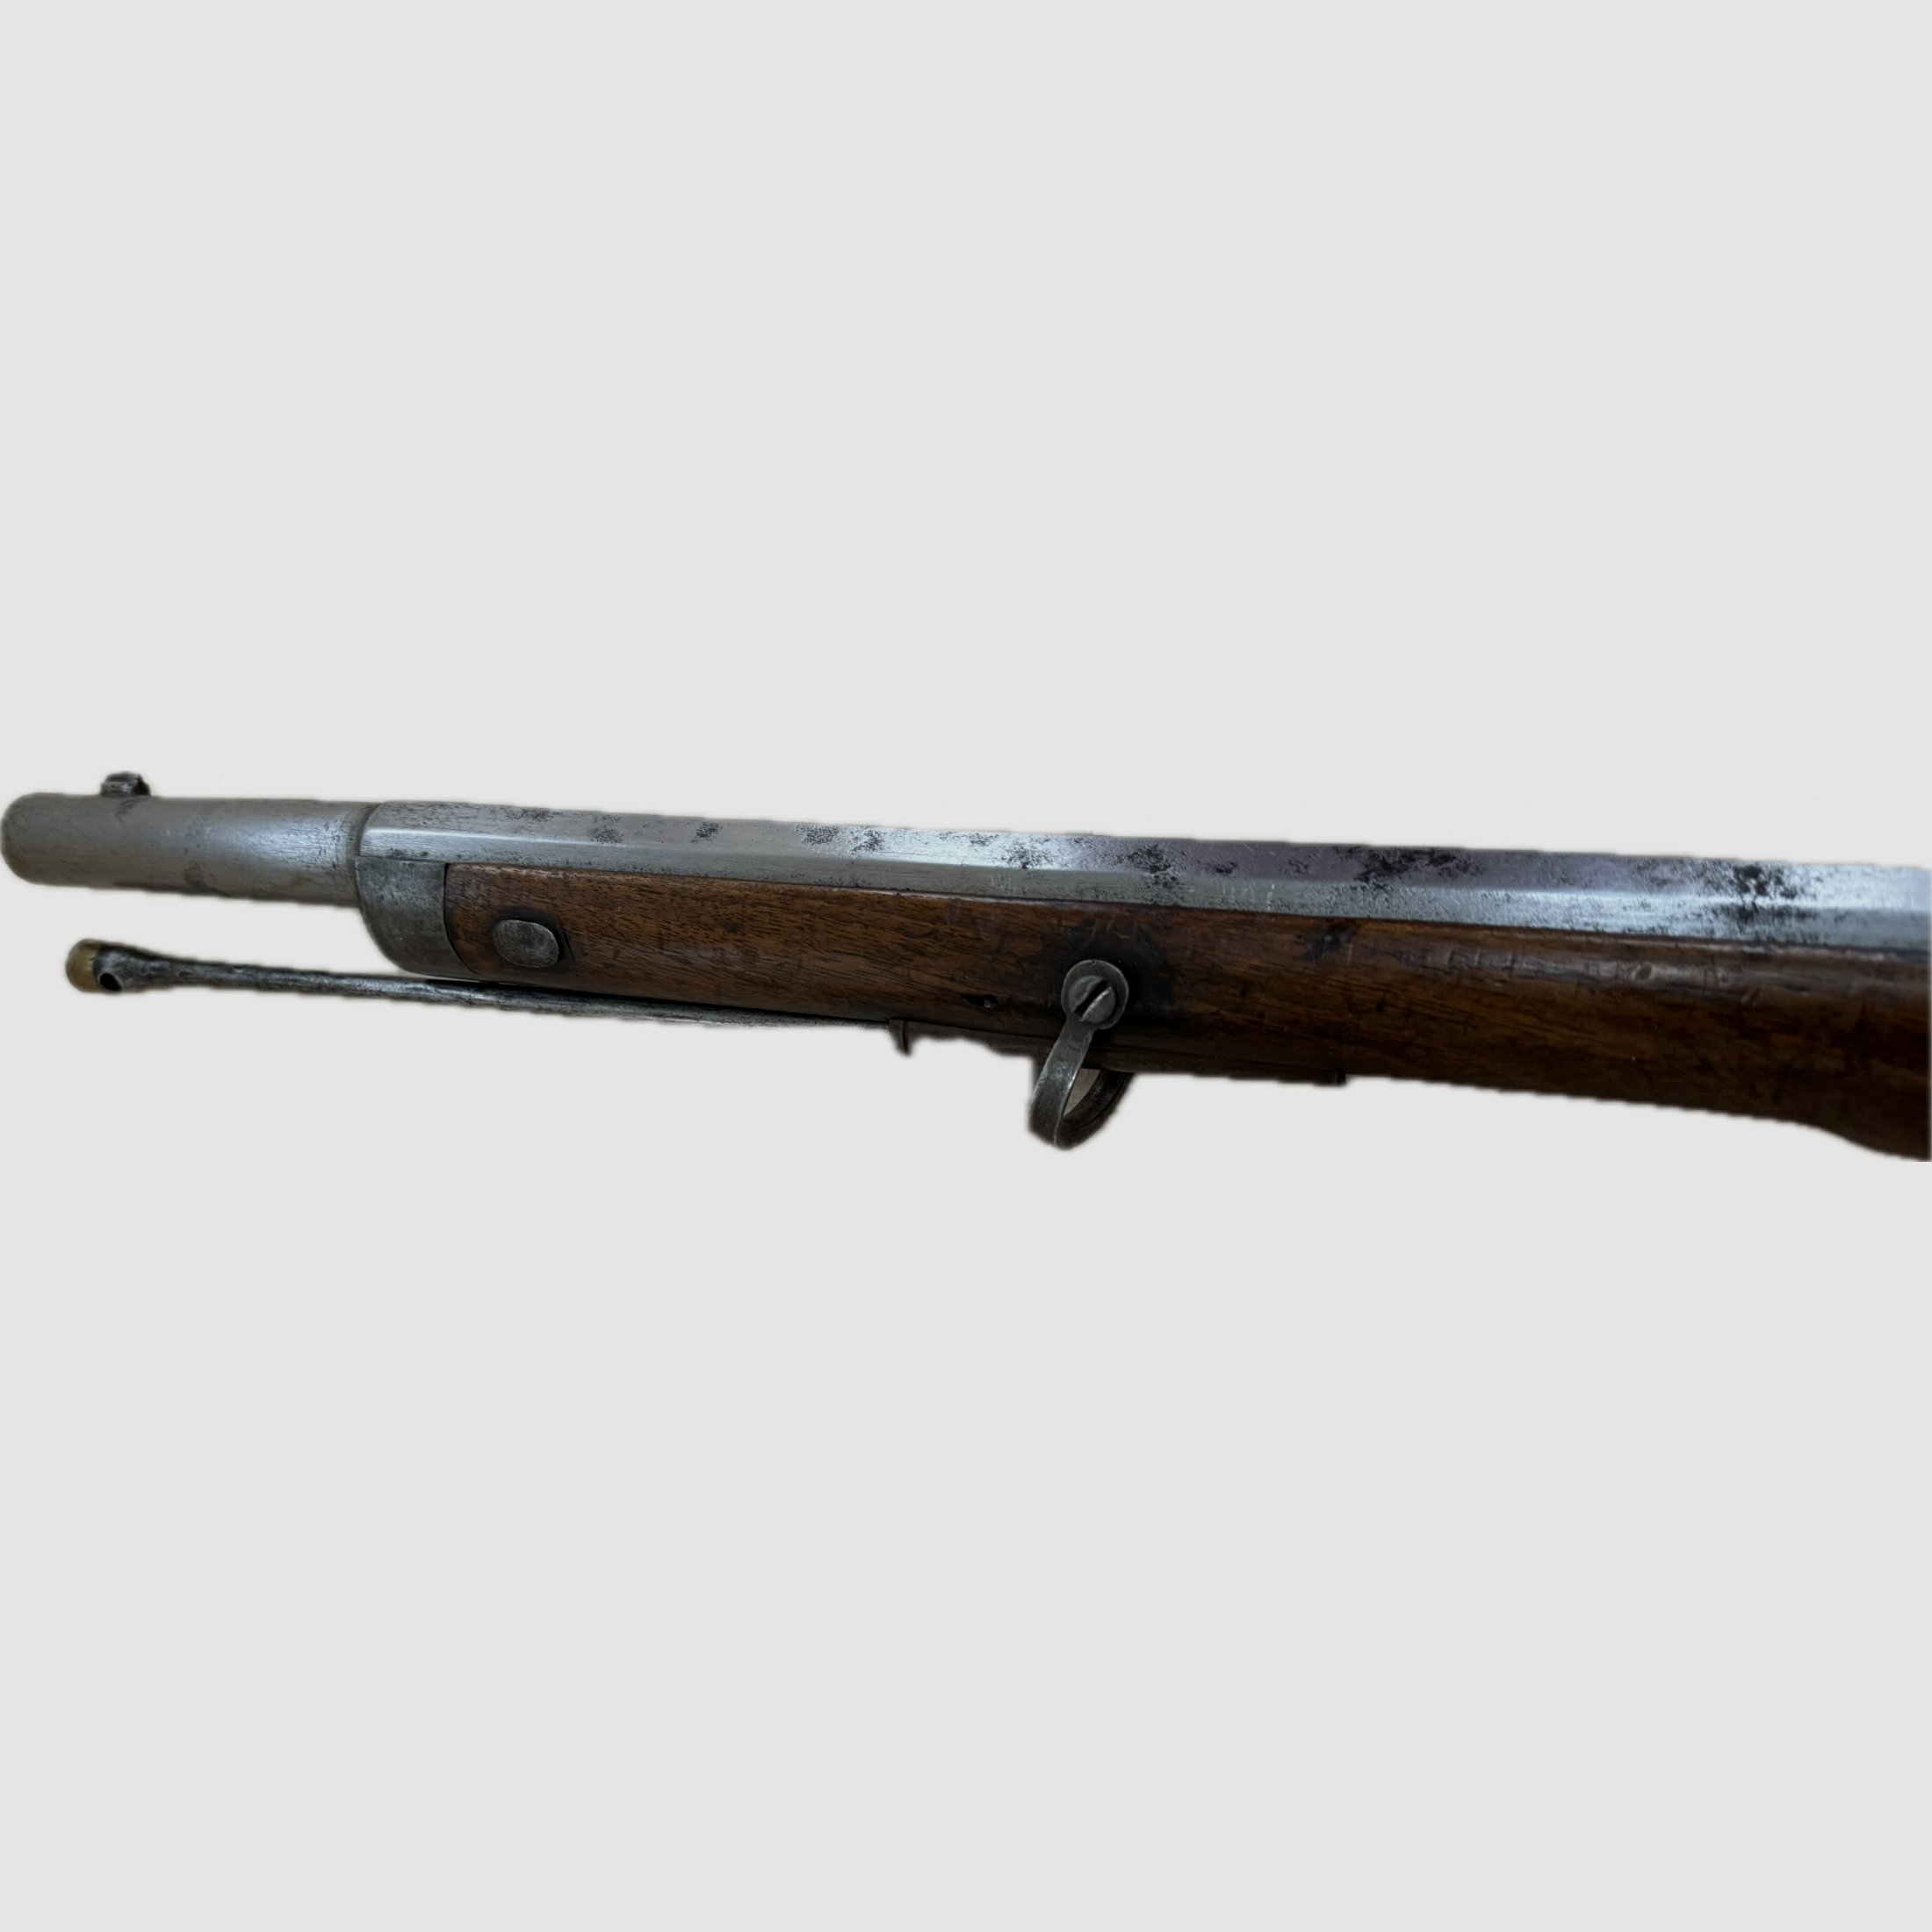  Wänzel Jägerstutzen M1854/67 Kal. 14 x 33R Wänzel mit original Bajonett und Patrone